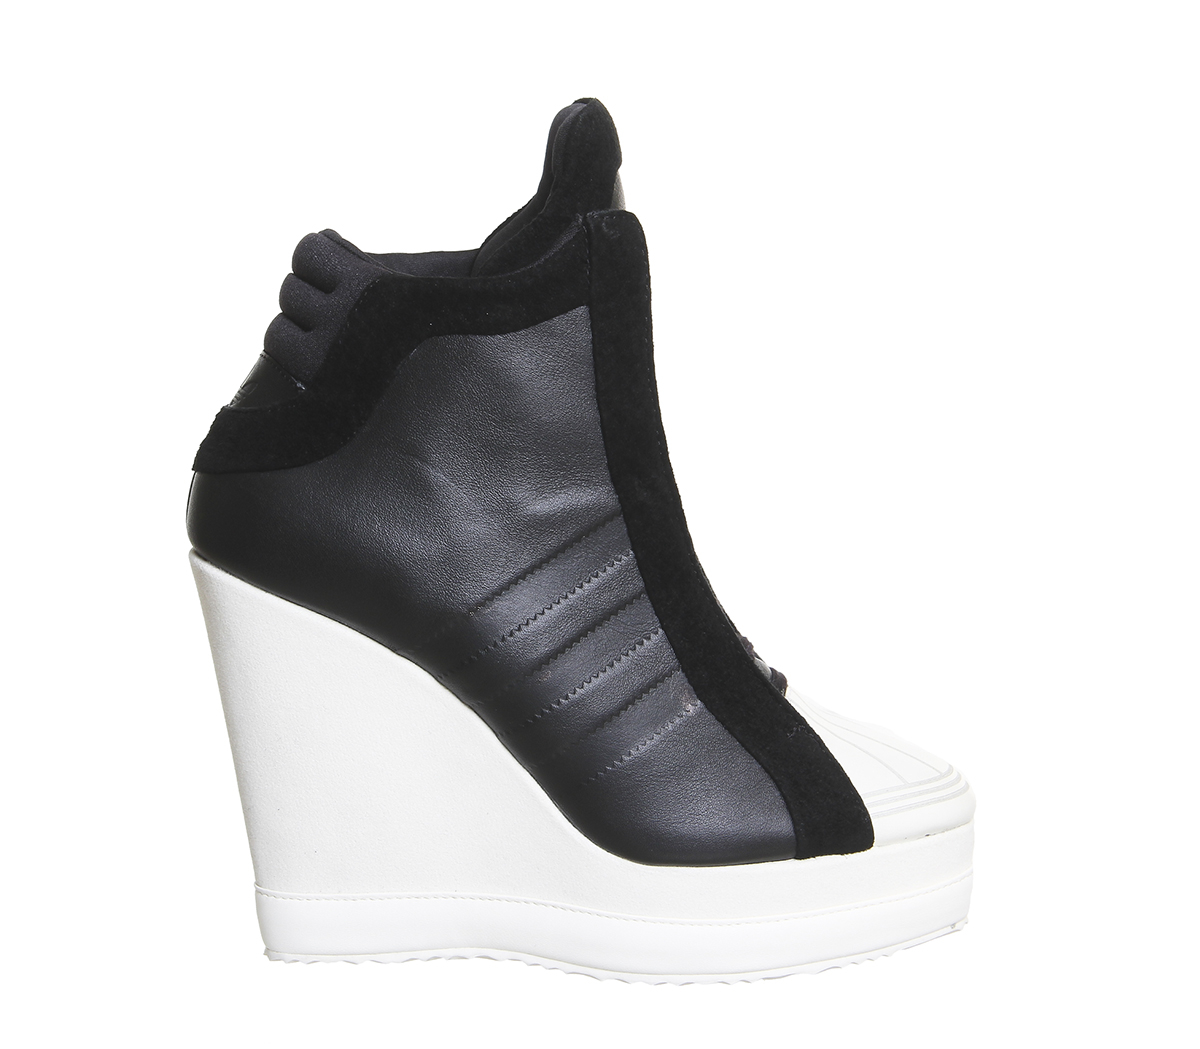 adidas Originals Leather Superstar Wedge in Black (White) - Lyst